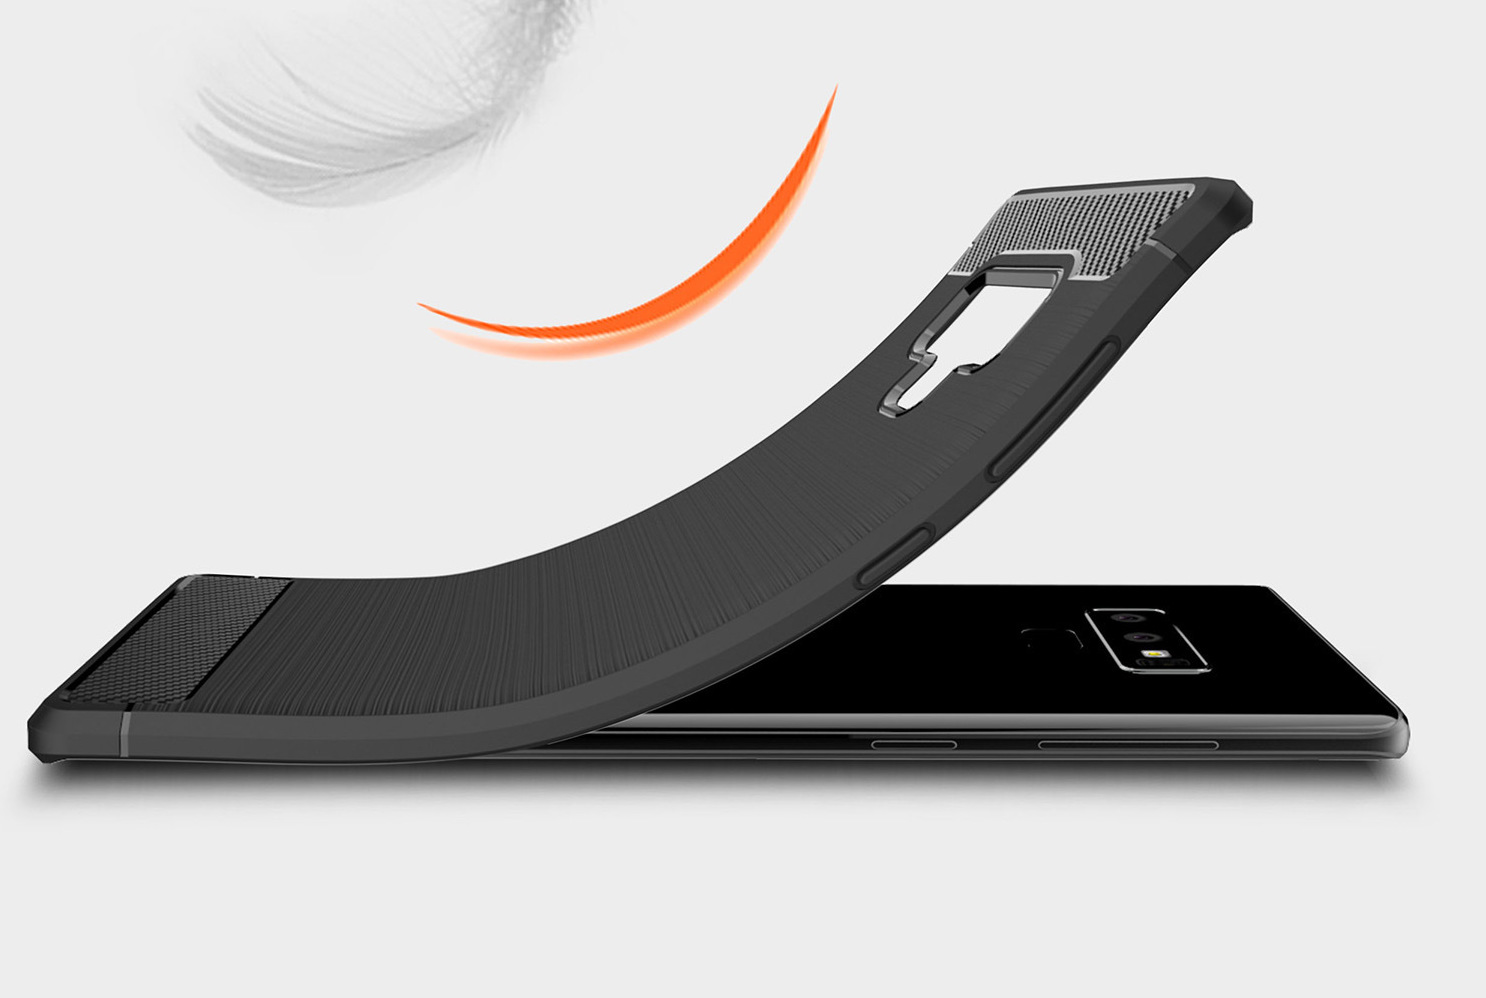 Ốp lưng chống sốc Vân Sợi Carbon cho Samsung Galaxy Note 9 - hàng nhập khẩu